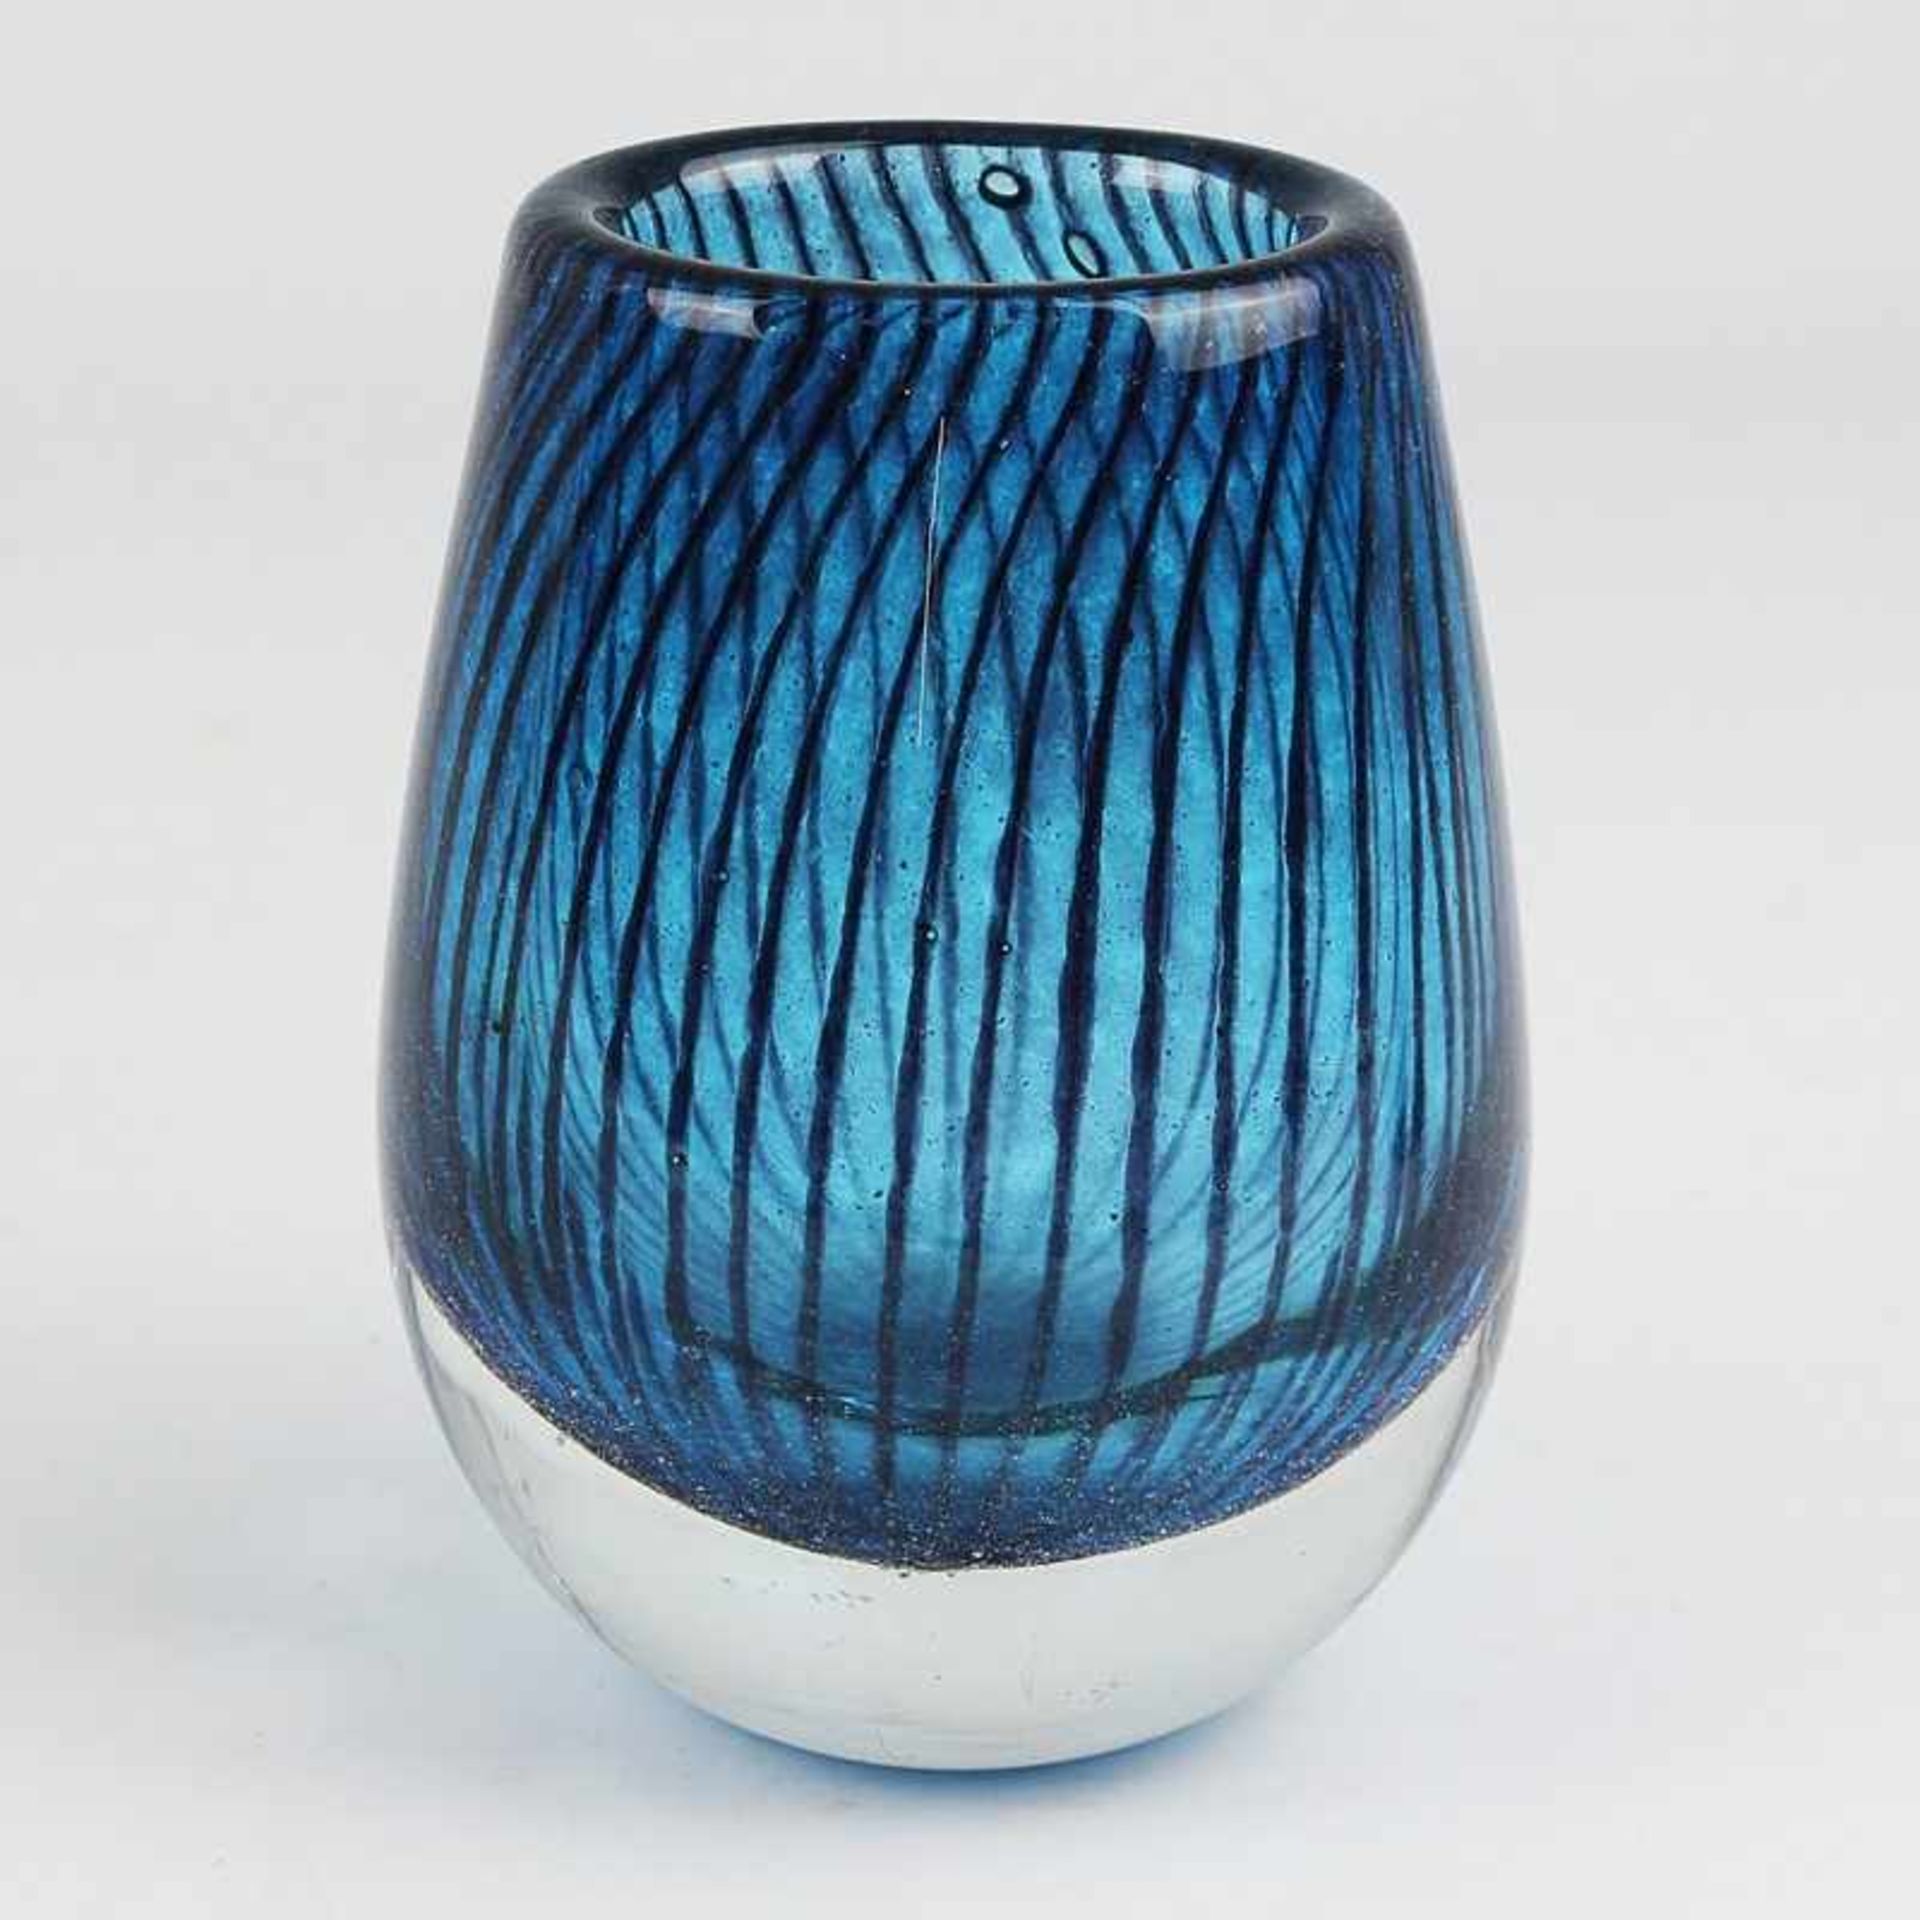 Vase 1950/60er J., Riihimäen Lasi Oy, Finnland, Entw. Nanny Still, farbloses dickw. Glas, runder